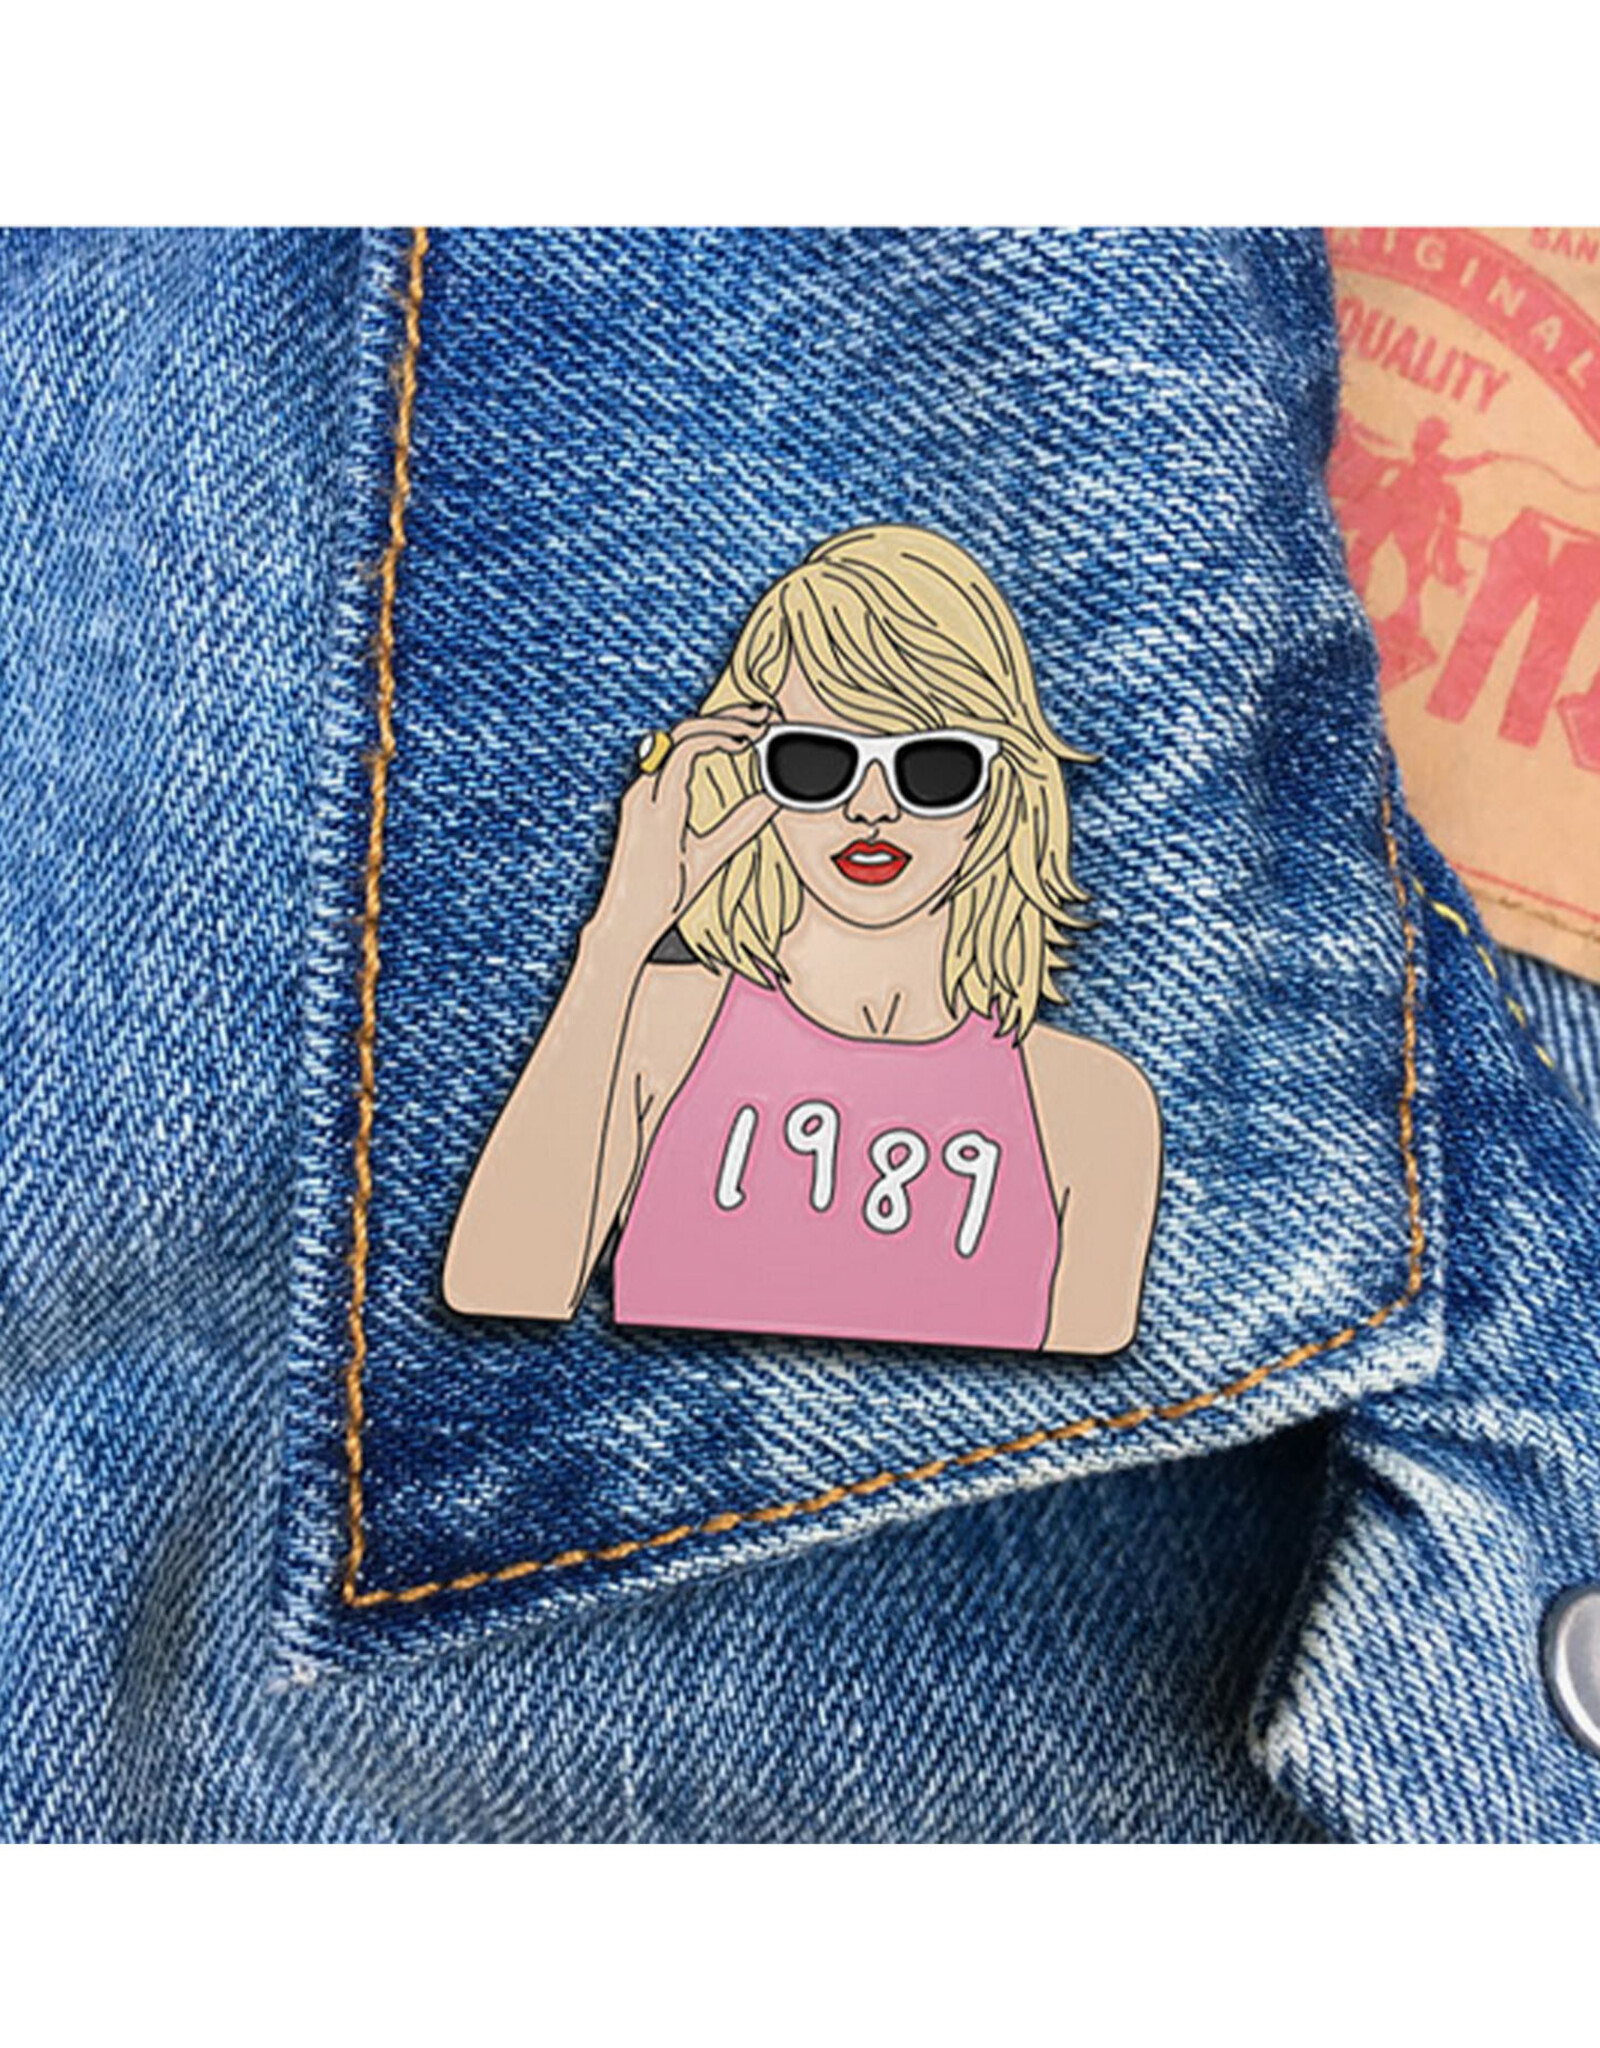 Taylor Swift 1989 Enamel Pin